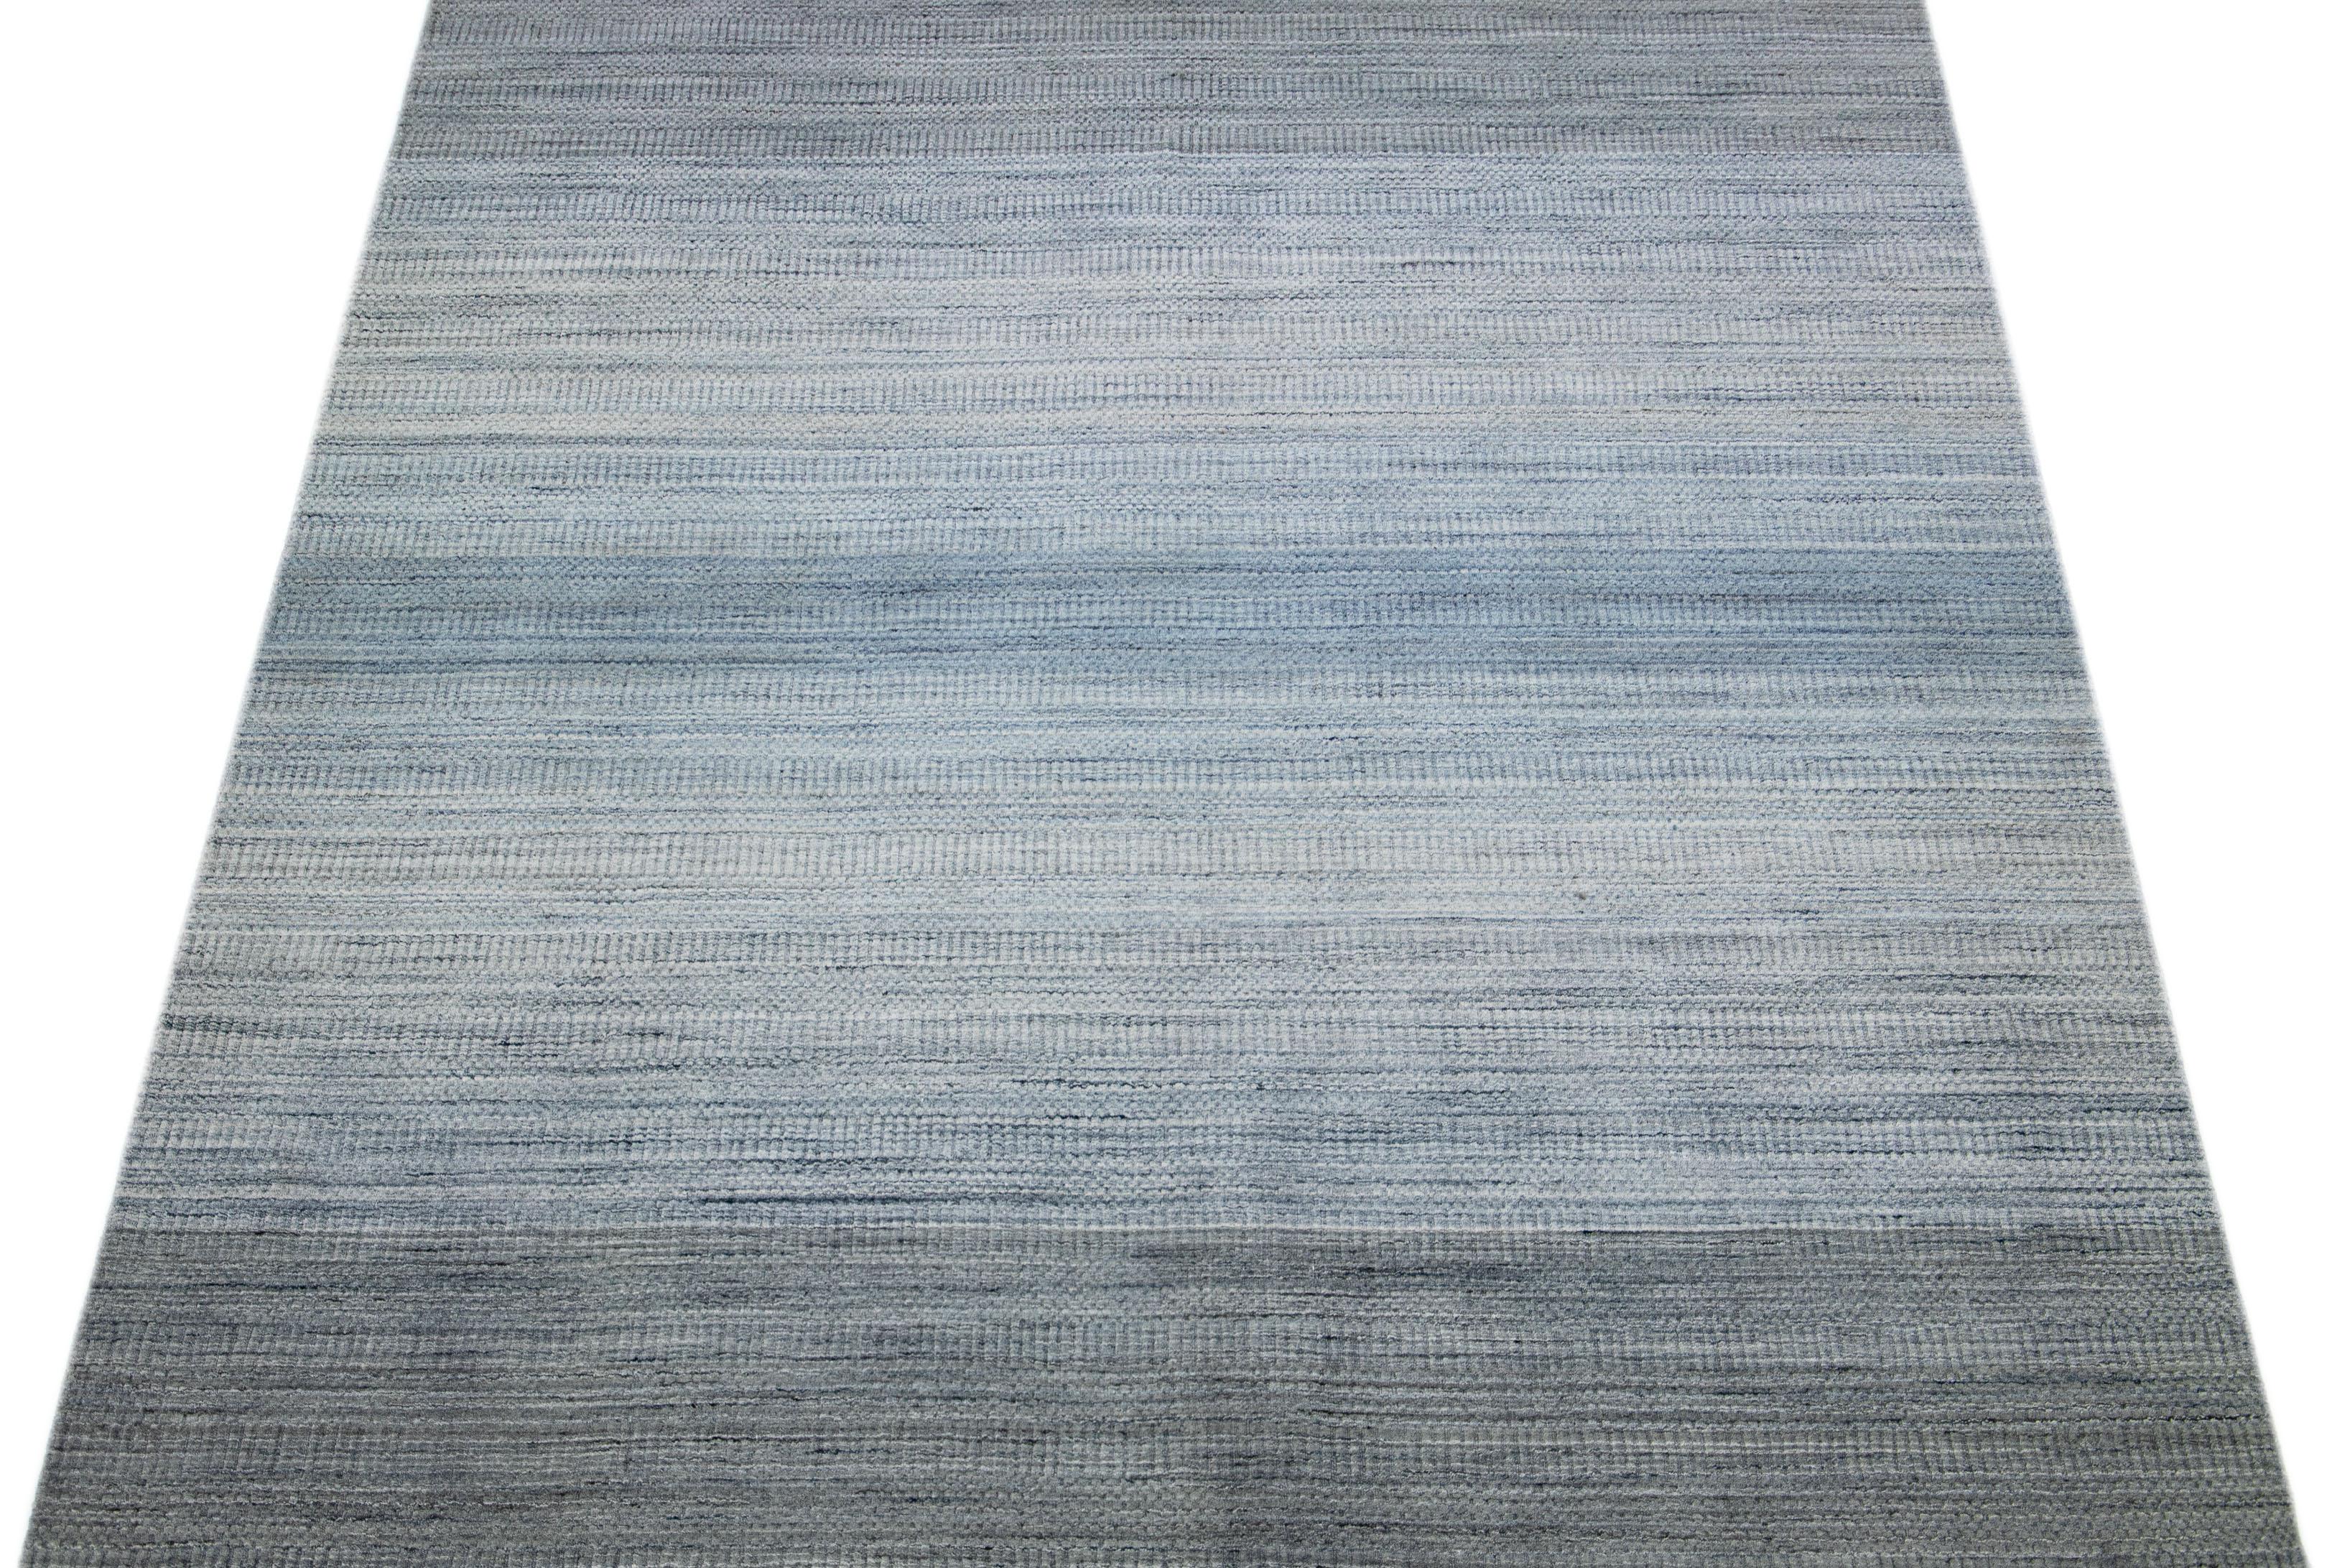 Schöne Apadana's handgefertigte Bambus & Seide indischen Rillen Teppich mit grauen und blauen Farben Feld. Dieser Teppich aus der Groove Collection hat ein durchgehendes Streifendesign.

Dieser Teppich misst 7'8